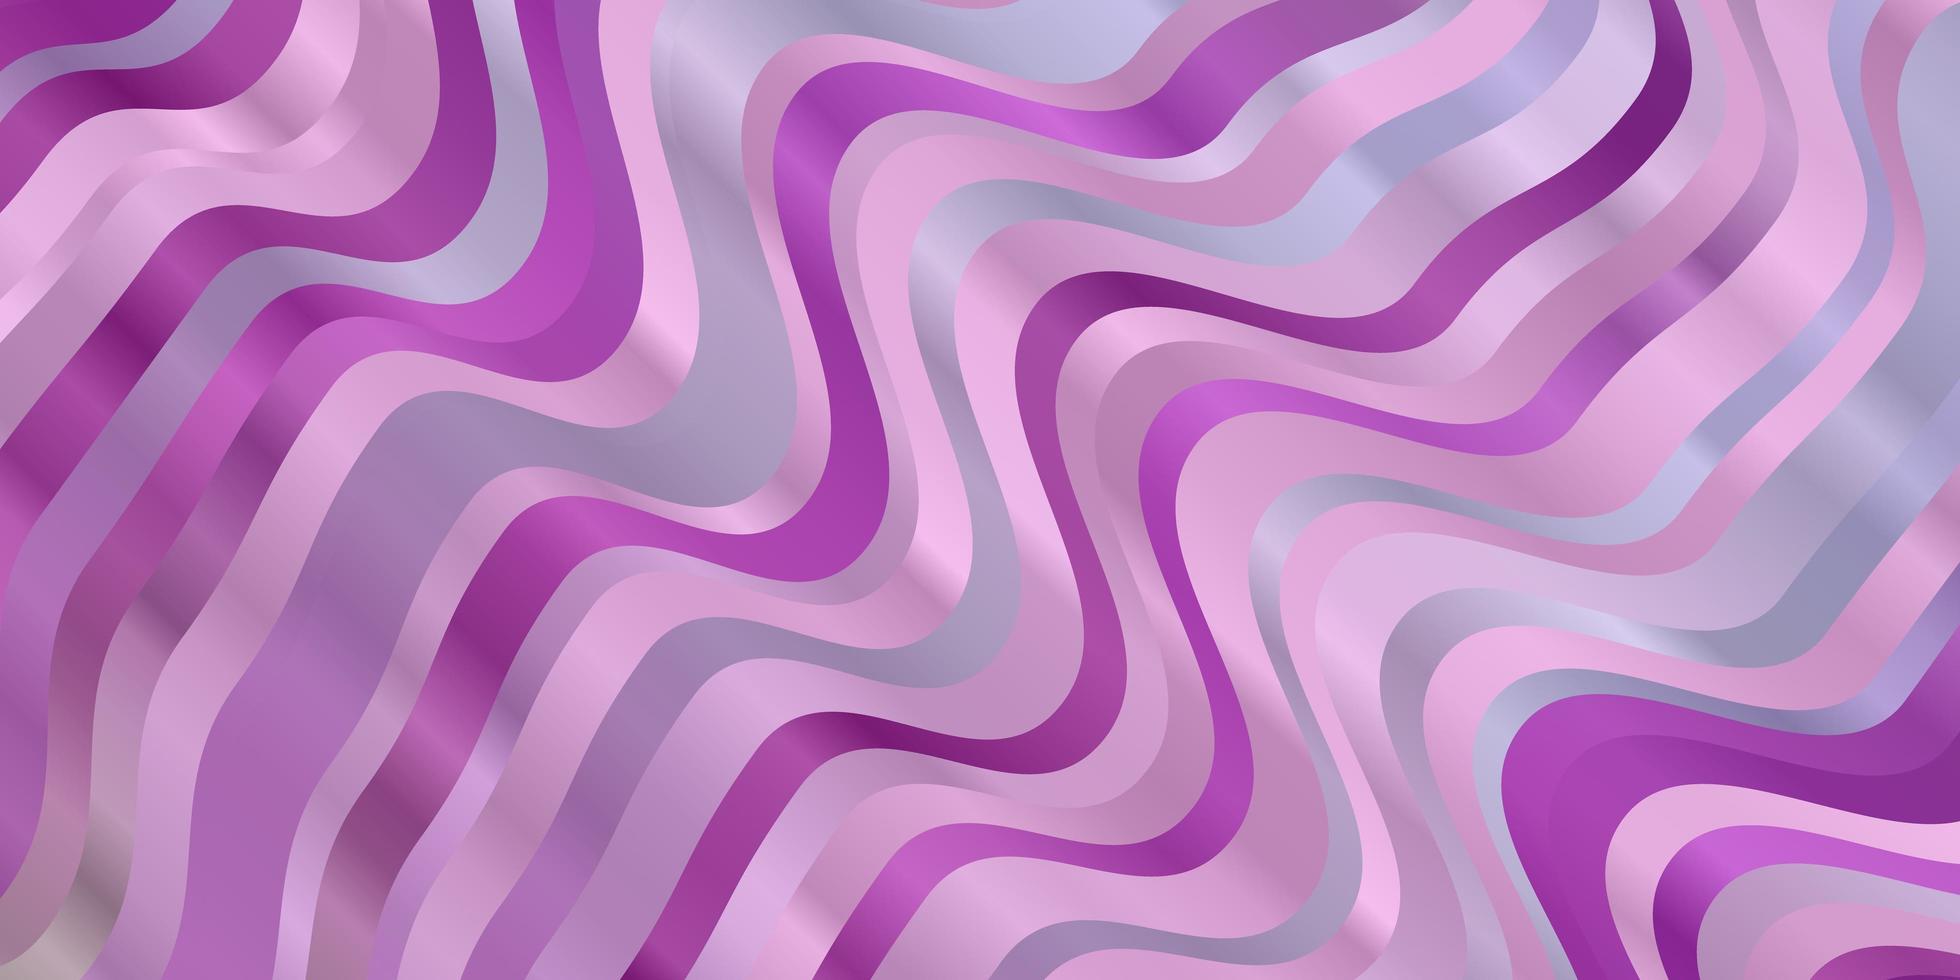 fond de vecteur rose violet clair avec des lignes pliées illustration colorée avec motif de lignes courbes pour les brochures dépliants